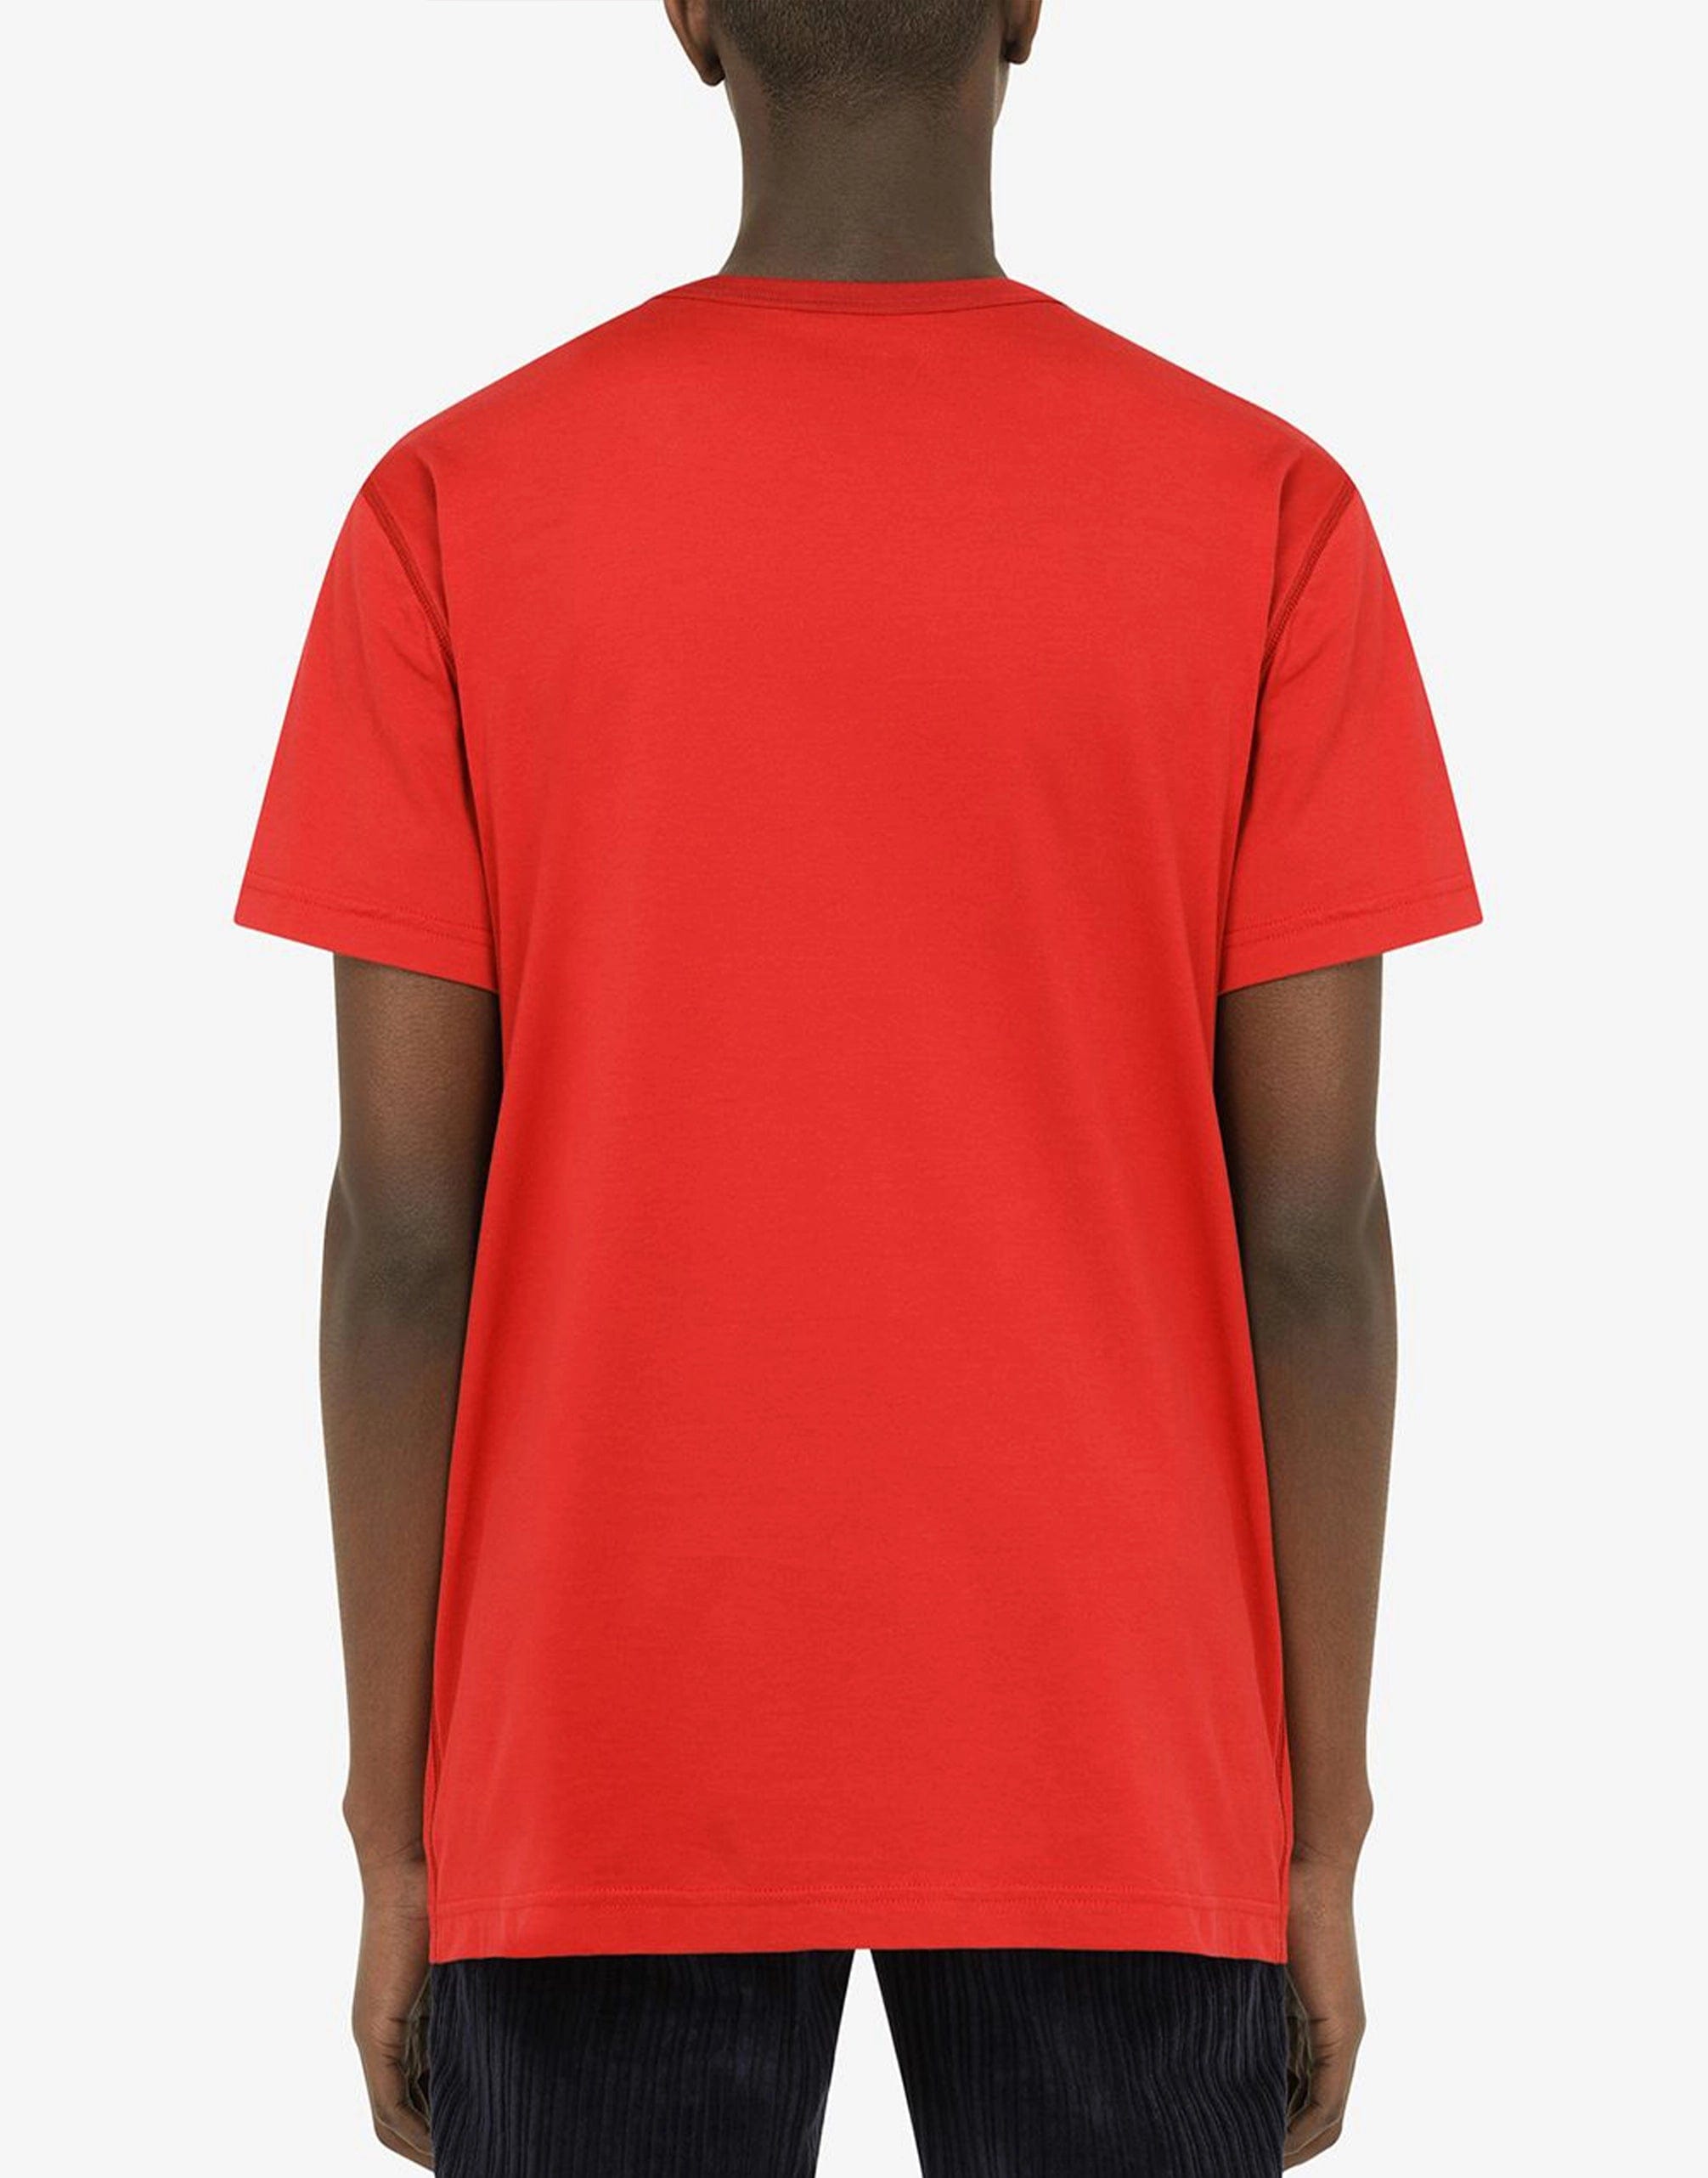 Baumwoll-T-Shirt mit Markenplatte in Rot